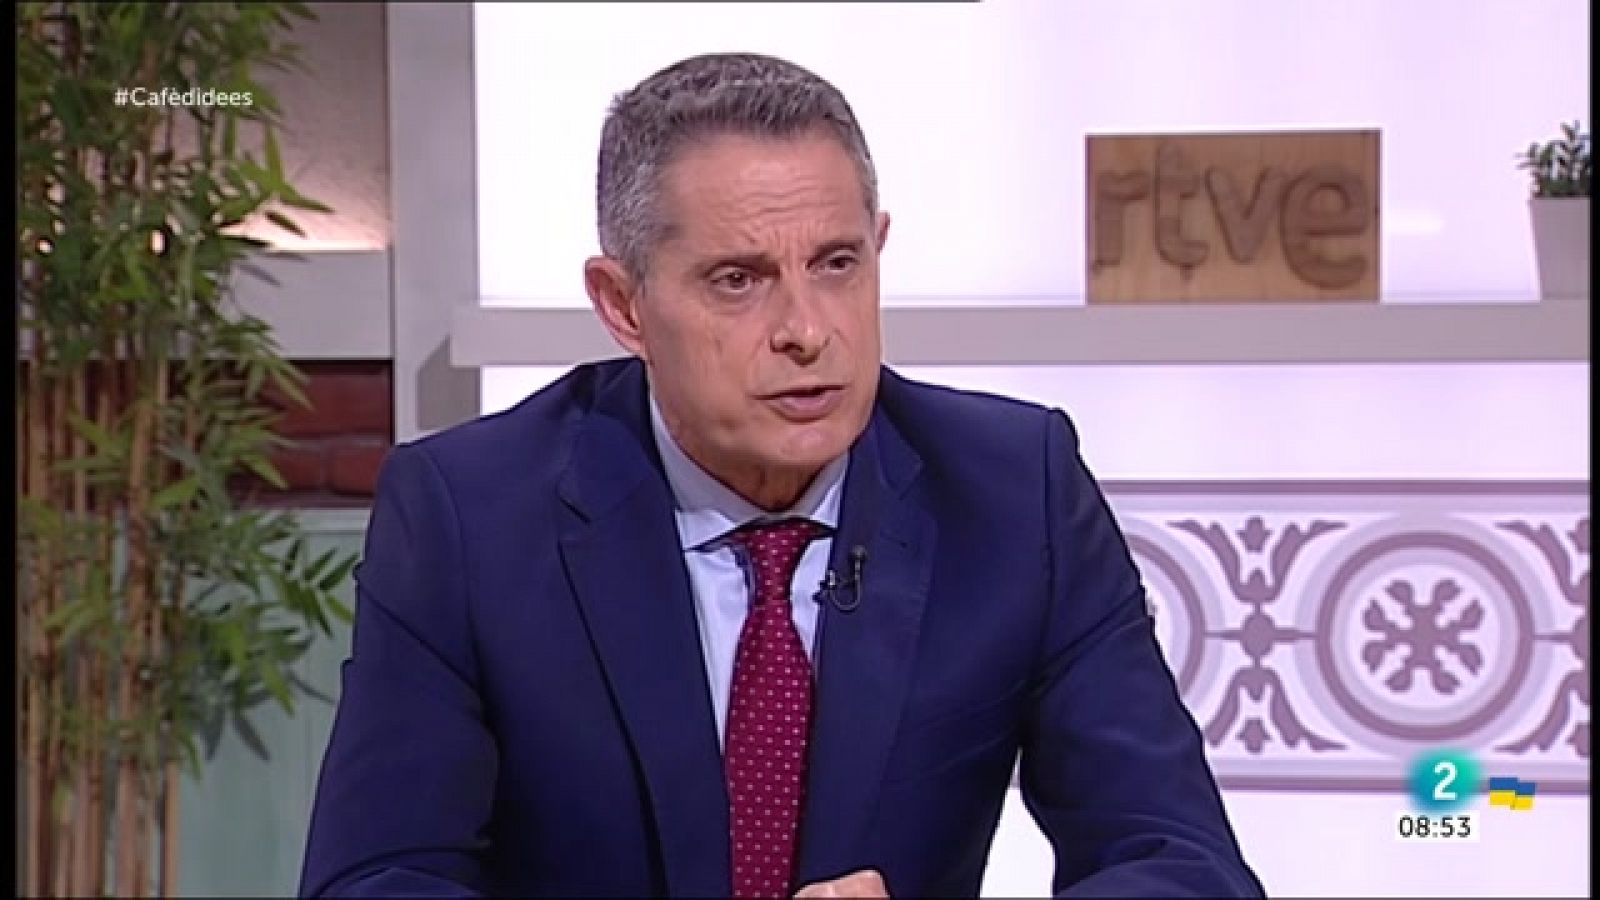 Álvarez-Espejo: "Putin s'ha marcat uns objectius i no cessarà"